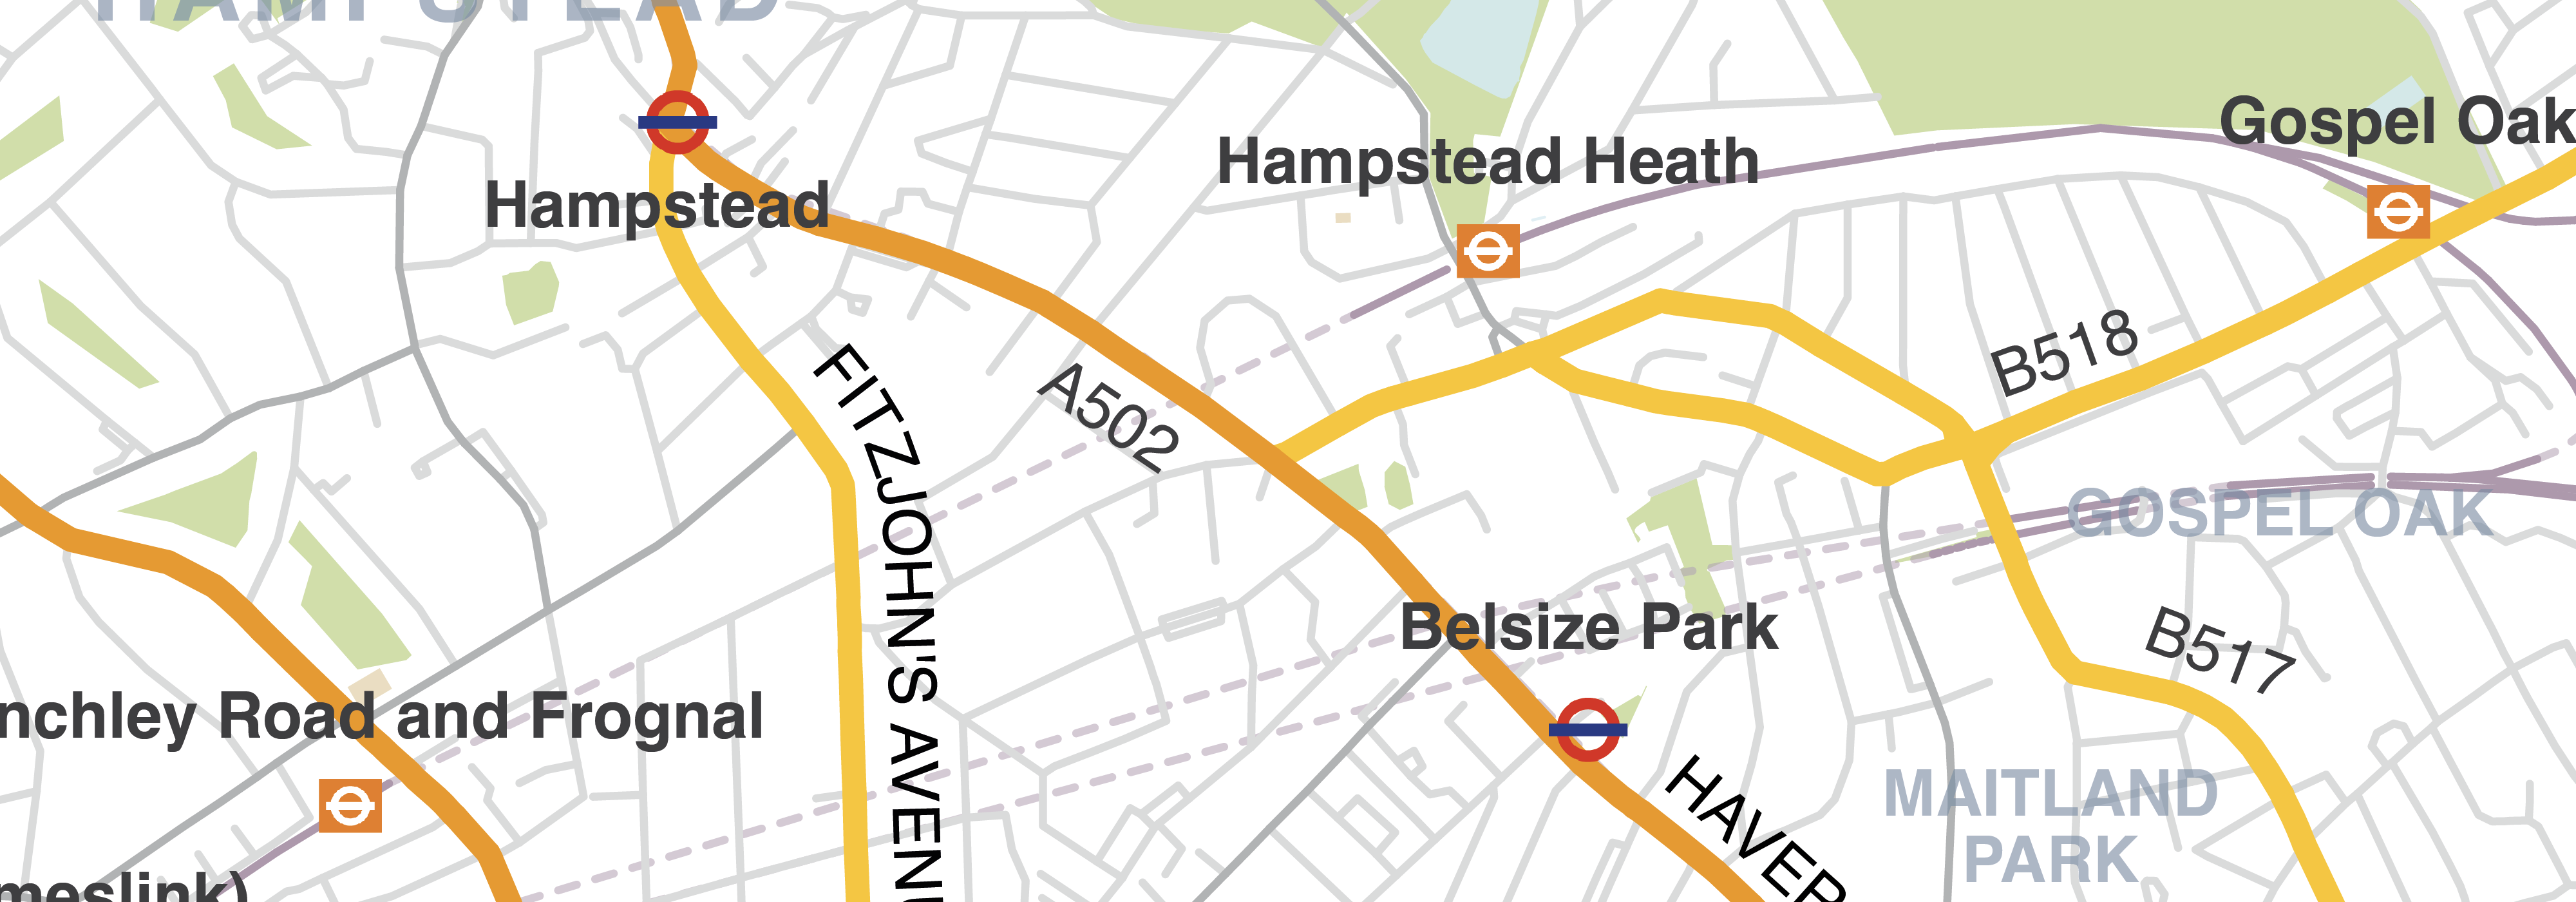 Hampstead details v2